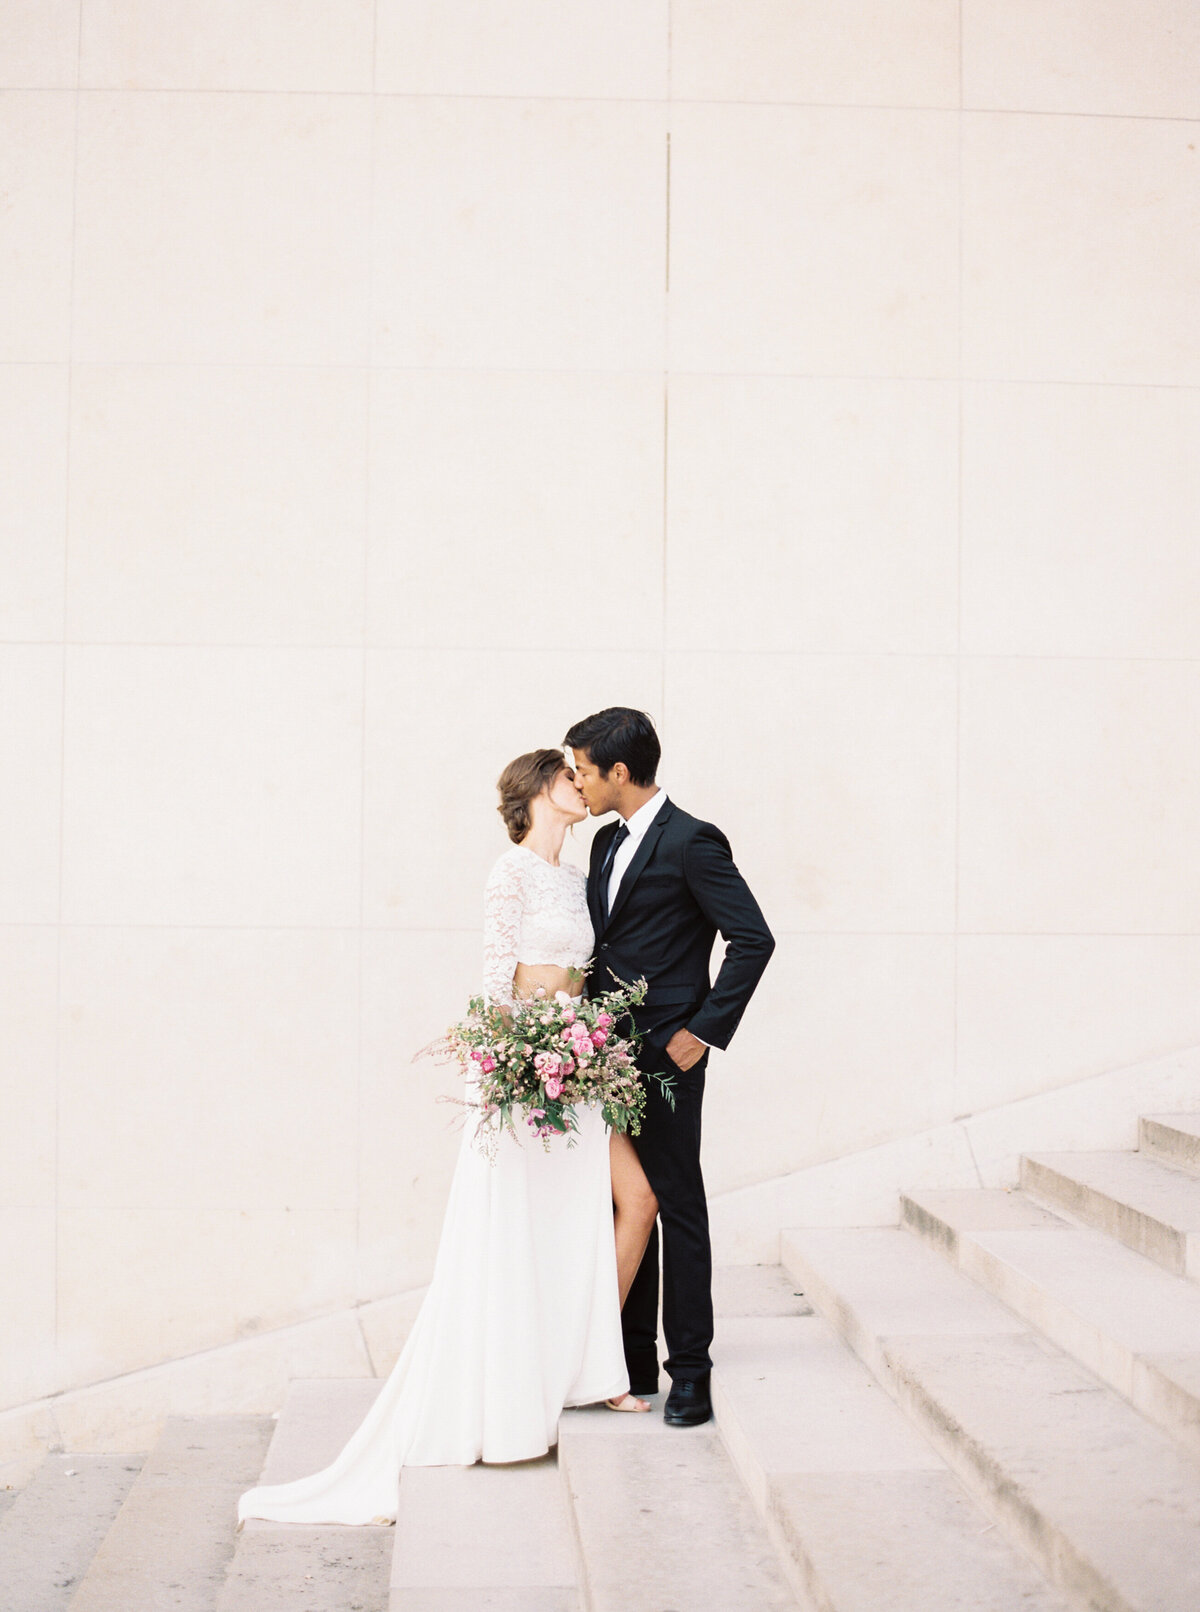 Parisian Elopement | Paris, France | Mary Claire Photography | Arizona & Destination Fine Art Wedding Photographer